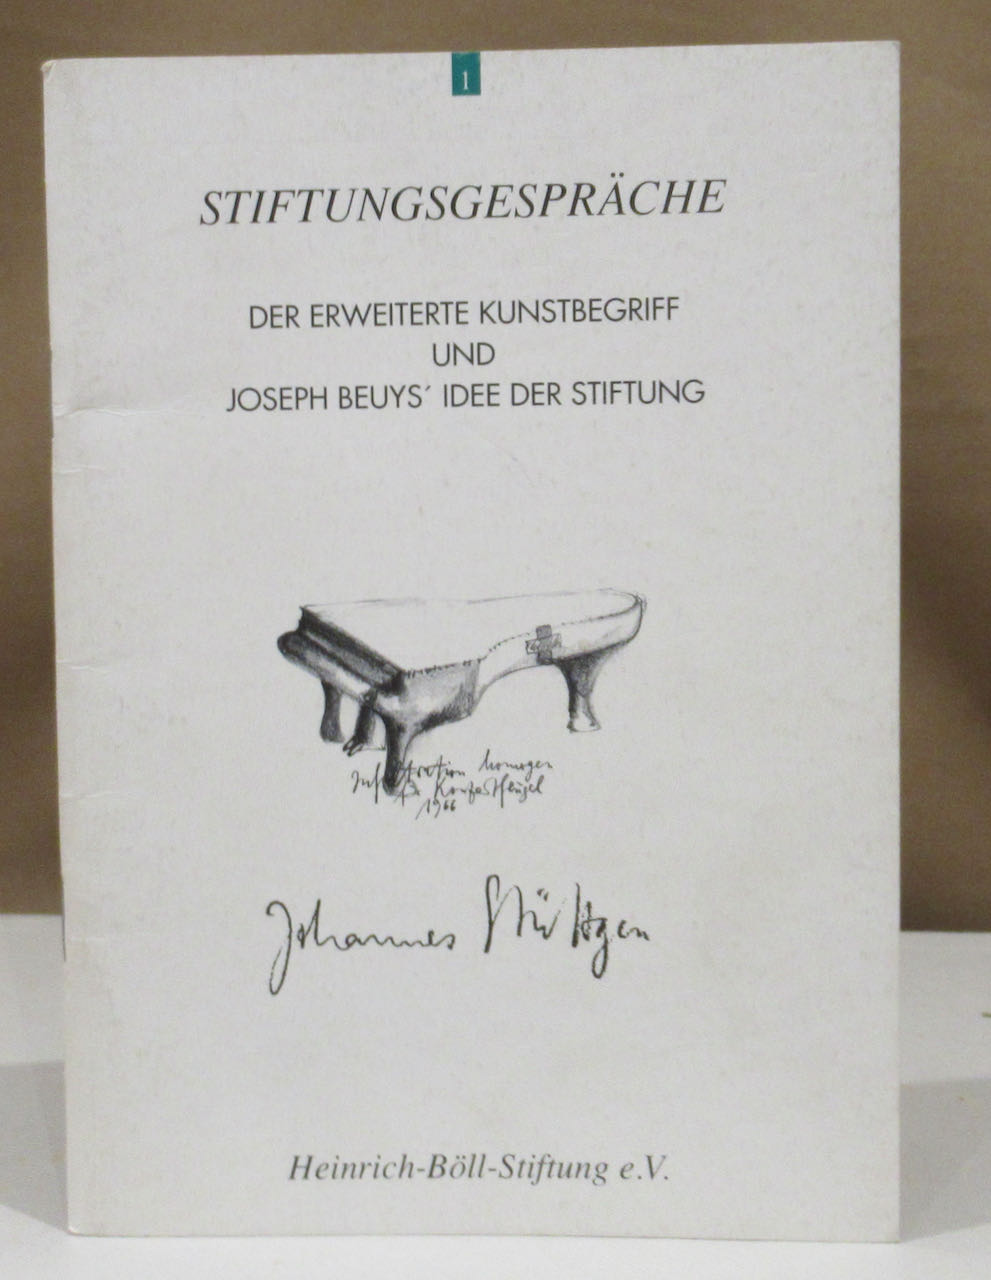 Der erweiterte Kunstbegriff und Joseph Beuys' Idee der Stiftung. Mit Zeichnungen von Johannes Stüttgen.